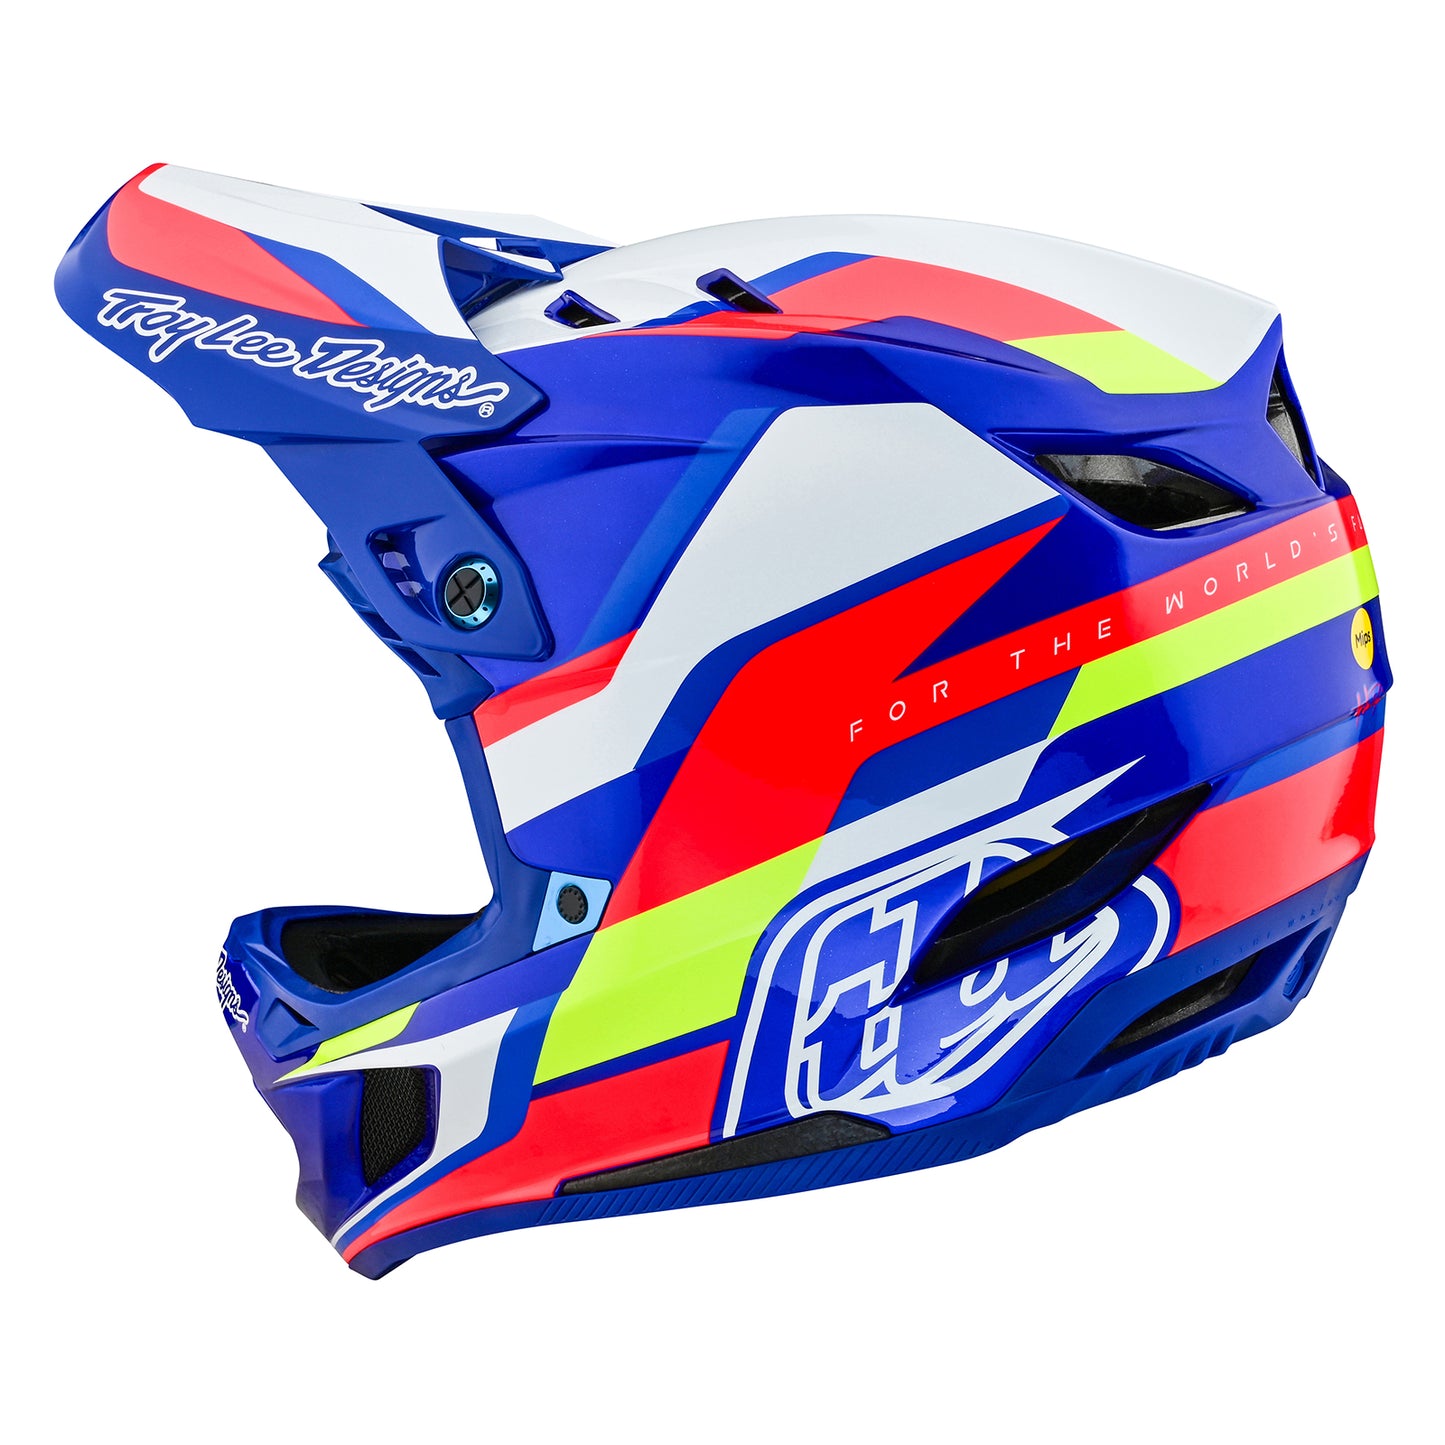 D4 Composite Helmet Omega White / Blue